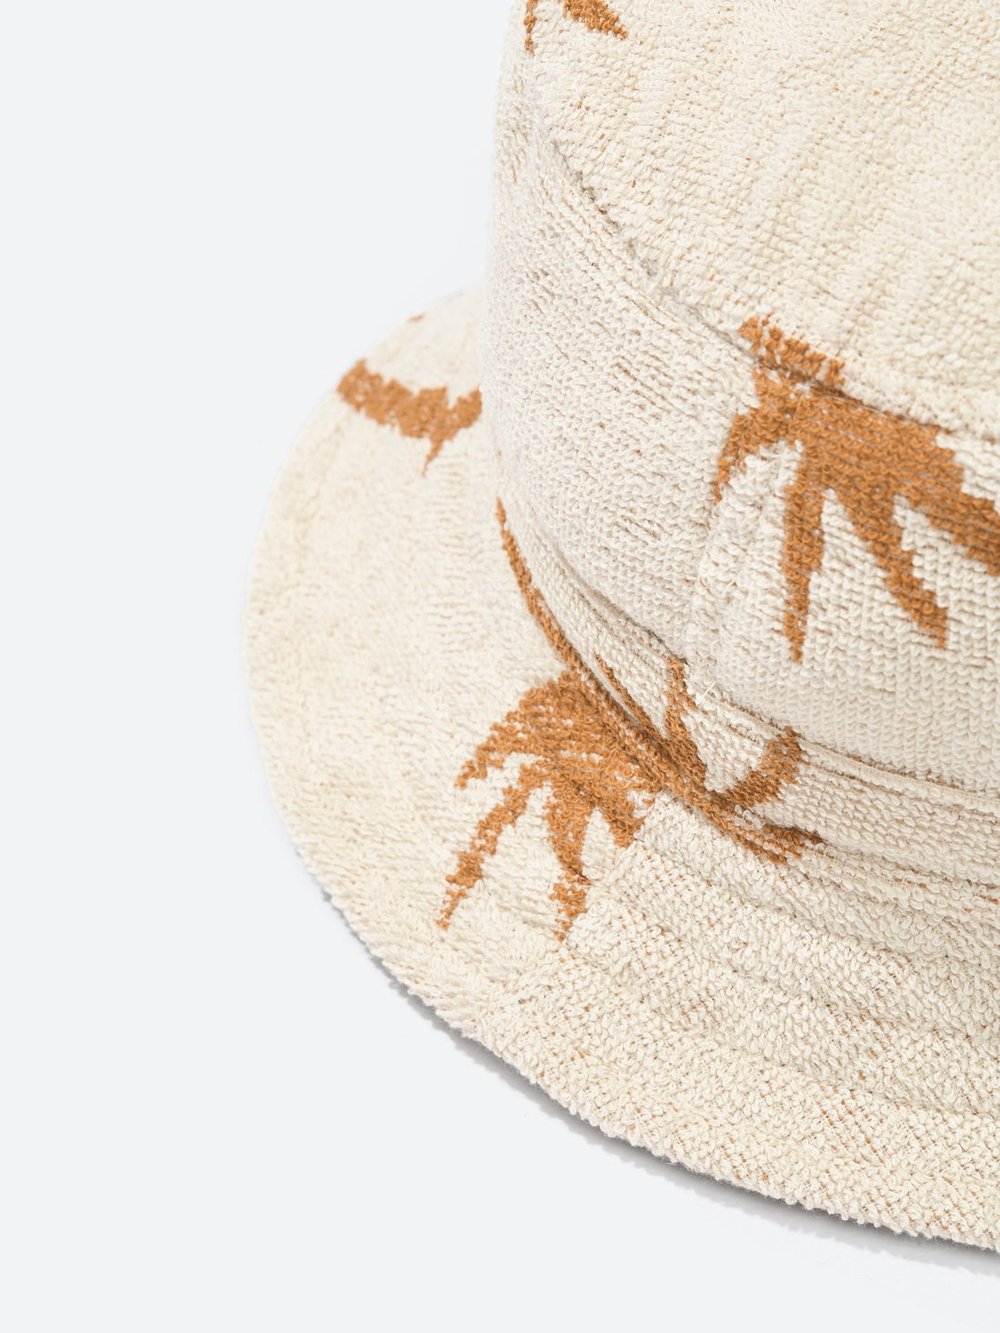 OAS | Palmy Bucket Hat